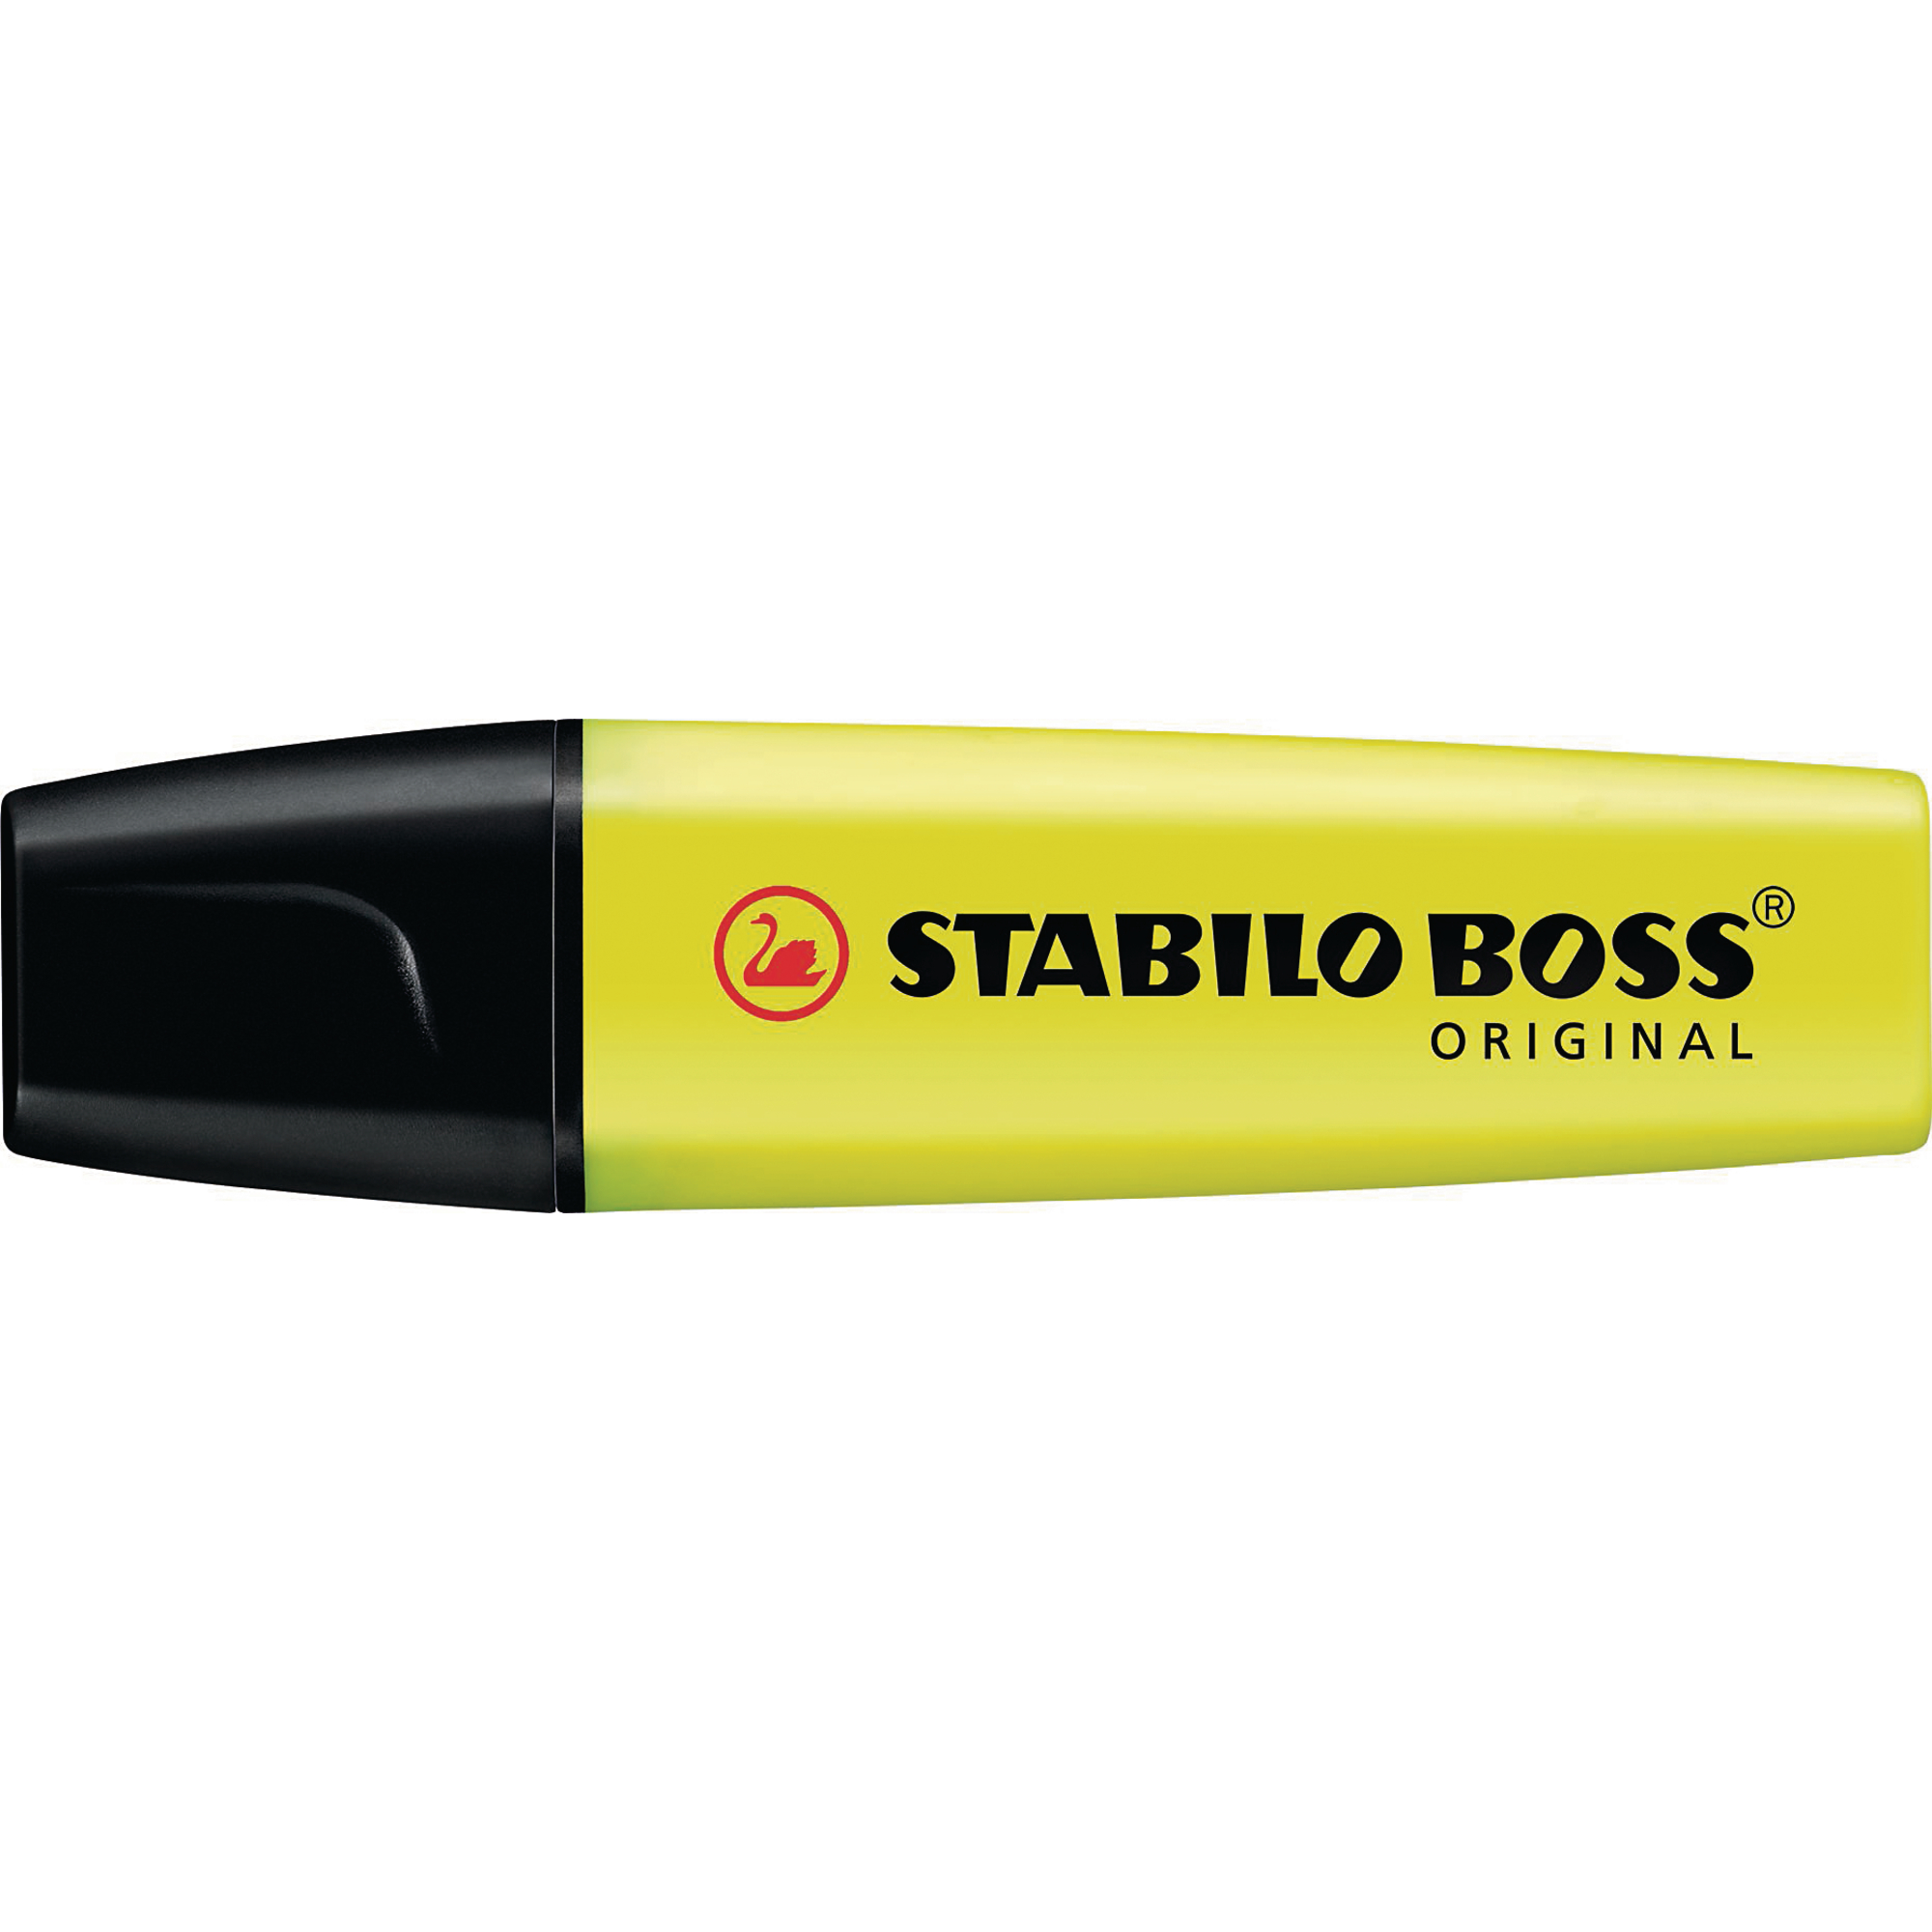 stabilo boss markers